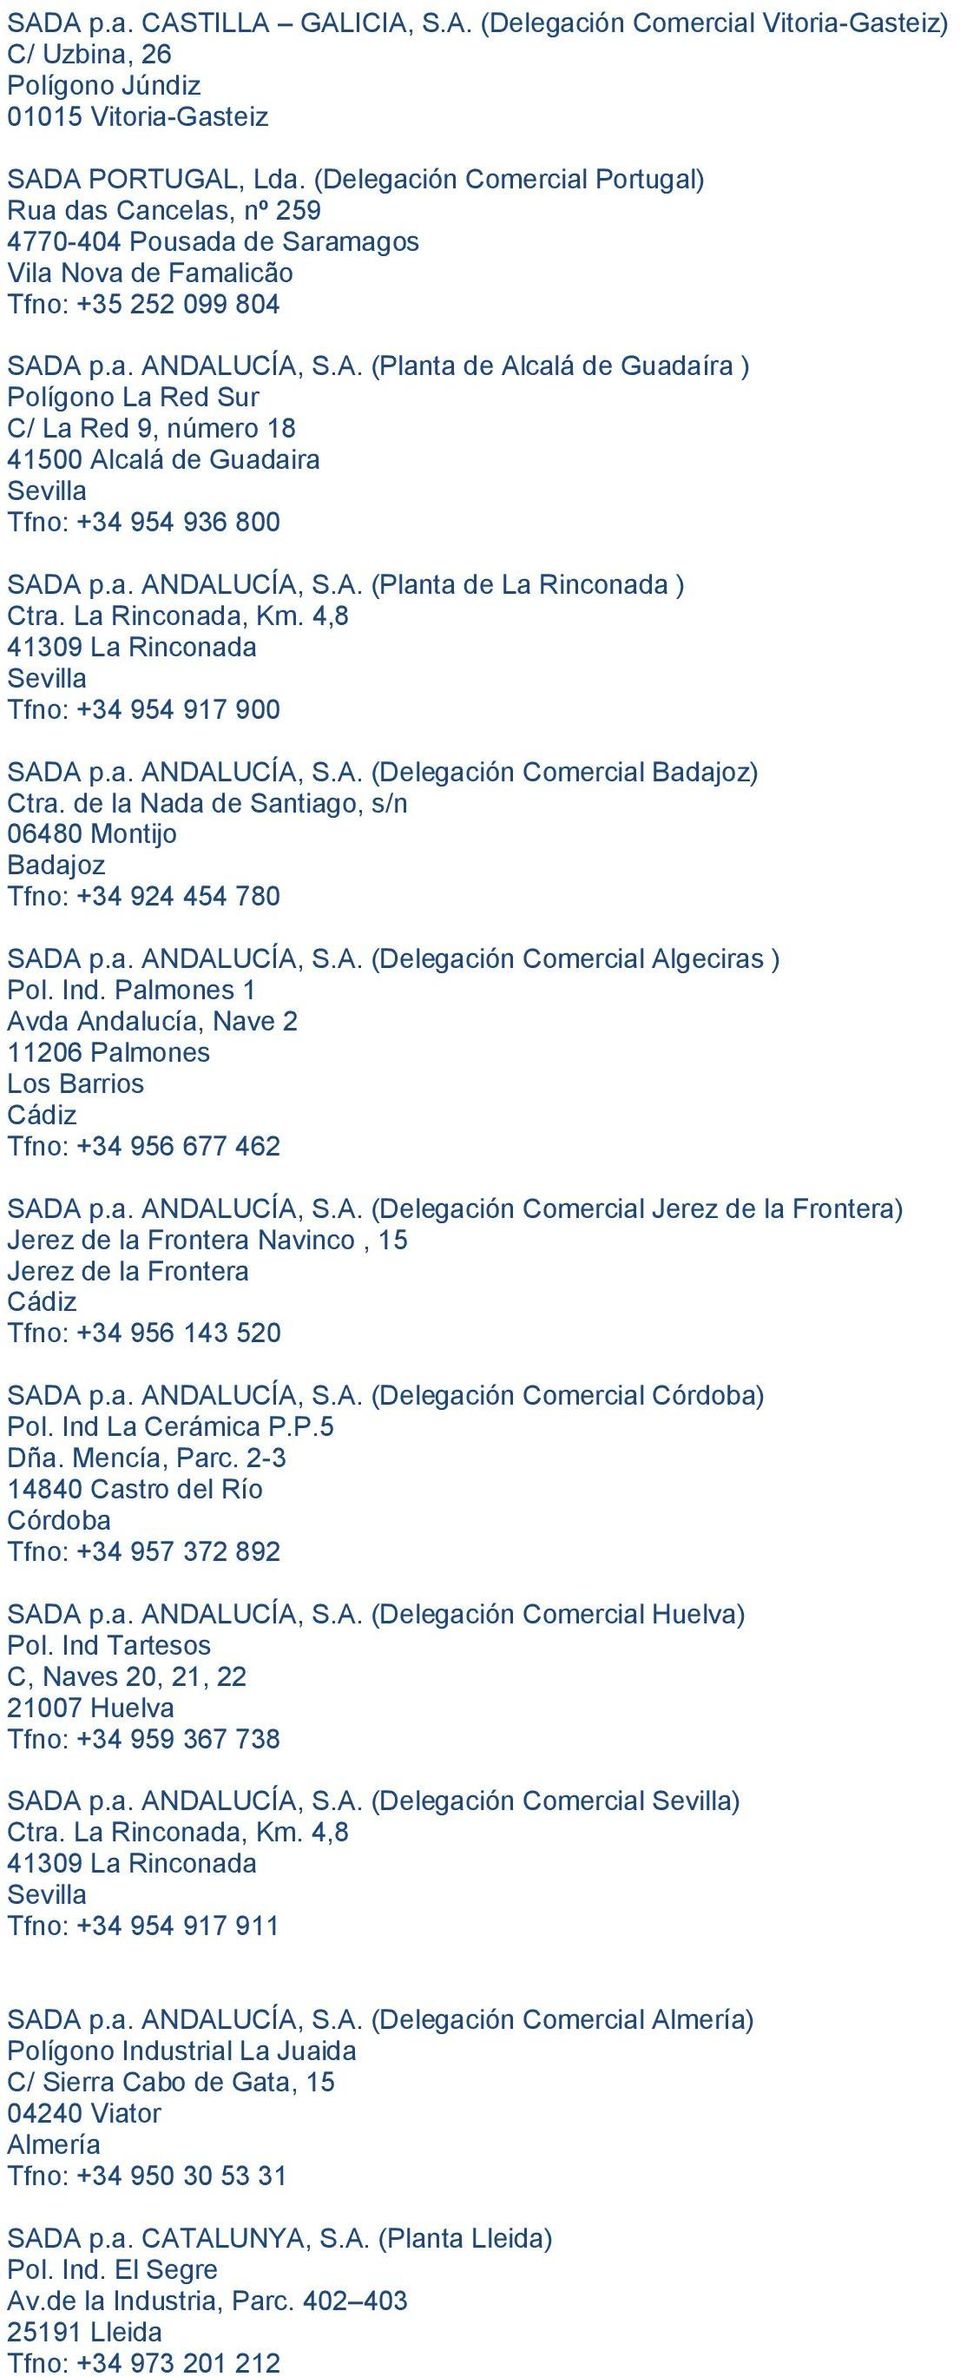 A p.a. ANDALUCÍA, S.A. (Planta de Alcalá de Guadaíra ) Polígono La Red Sur C/ La Red 9, número 18 41500 Alcalá de Guadaira Tfno: +34 954 936 800 SADA p.a. ANDALUCÍA, S.A. (Planta de La Rinconada ) Ctra.